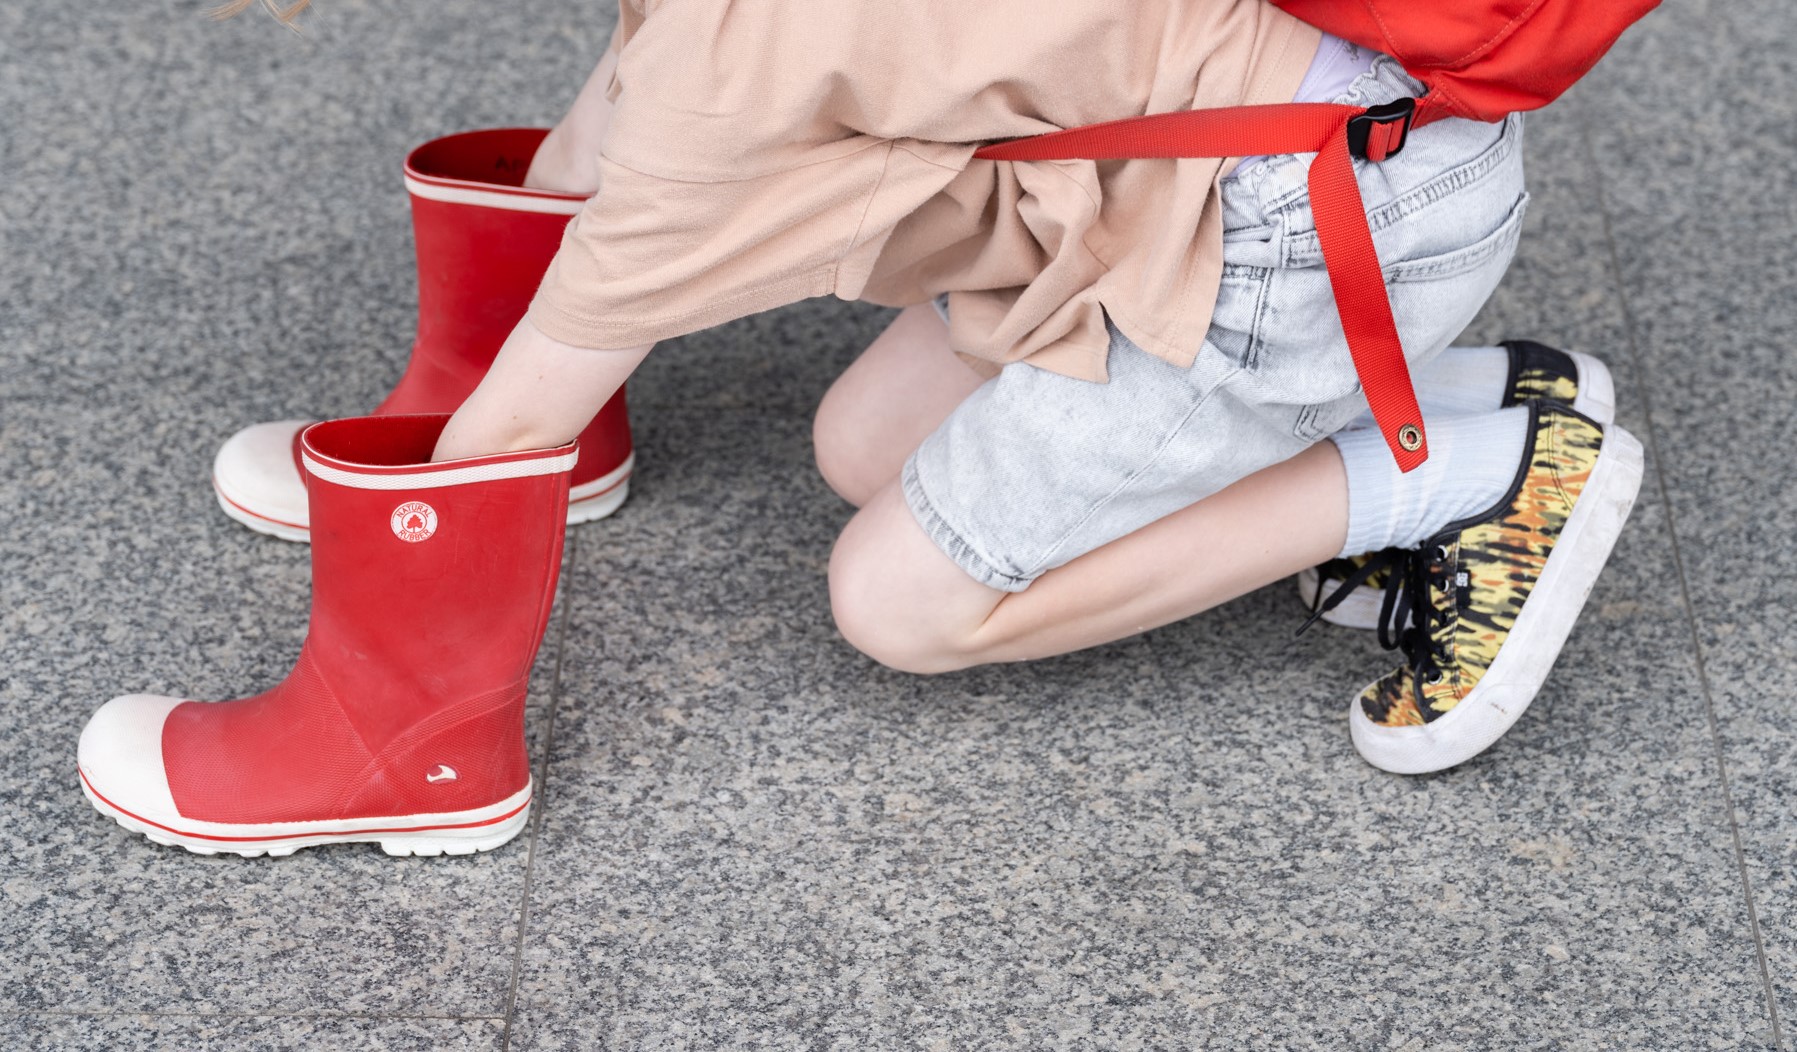 Dziewczynka z czerwonym plecakiem kuca i wsadza dłonie w czerwone kalosze.